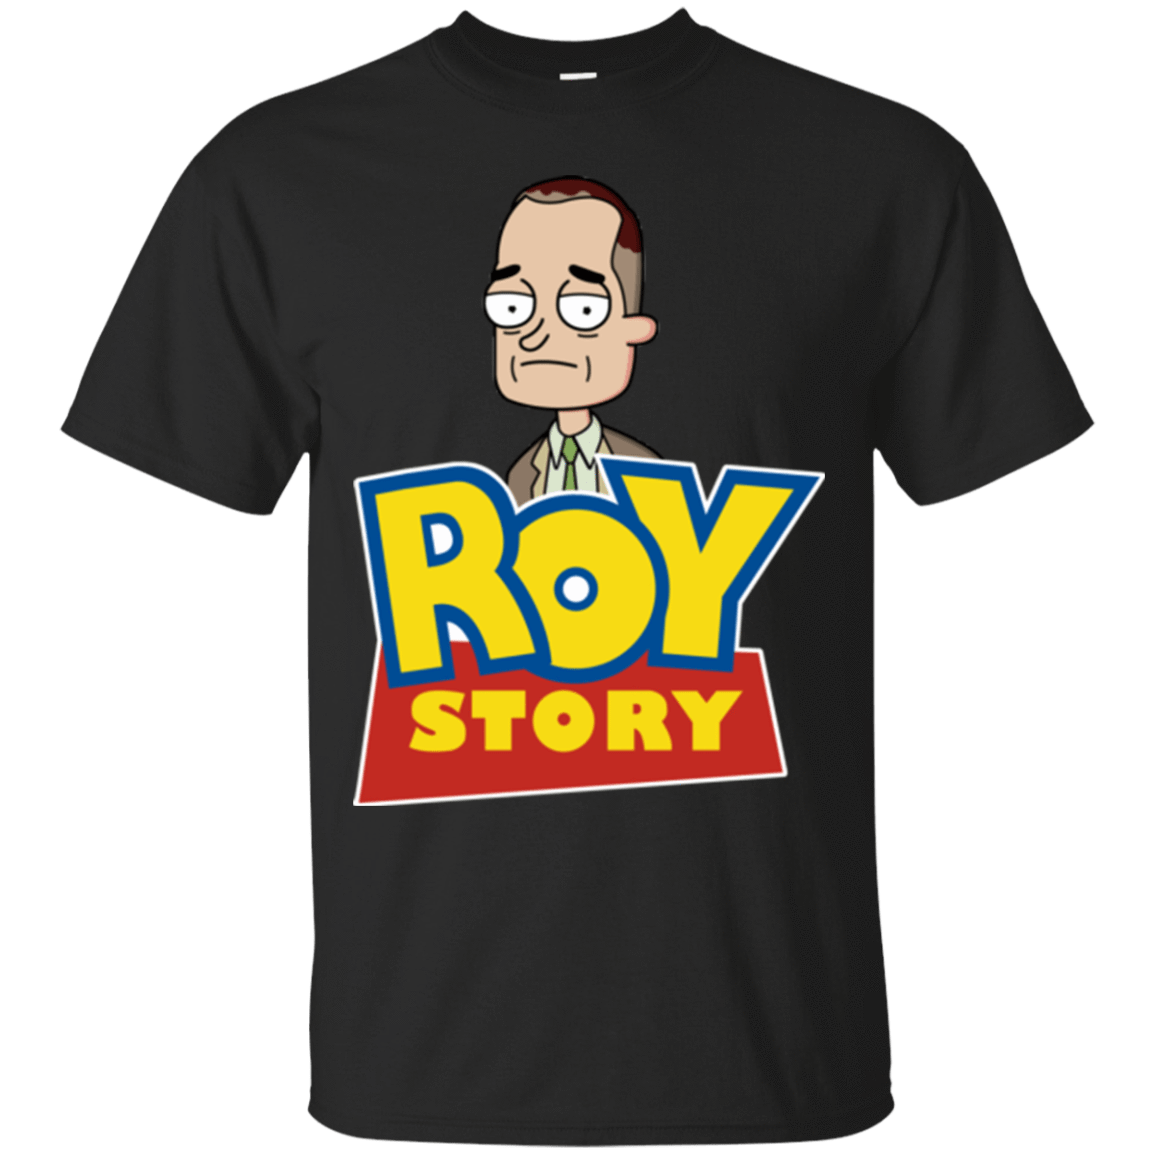 T-Shirts Black / Small Roy Story T-Shirt